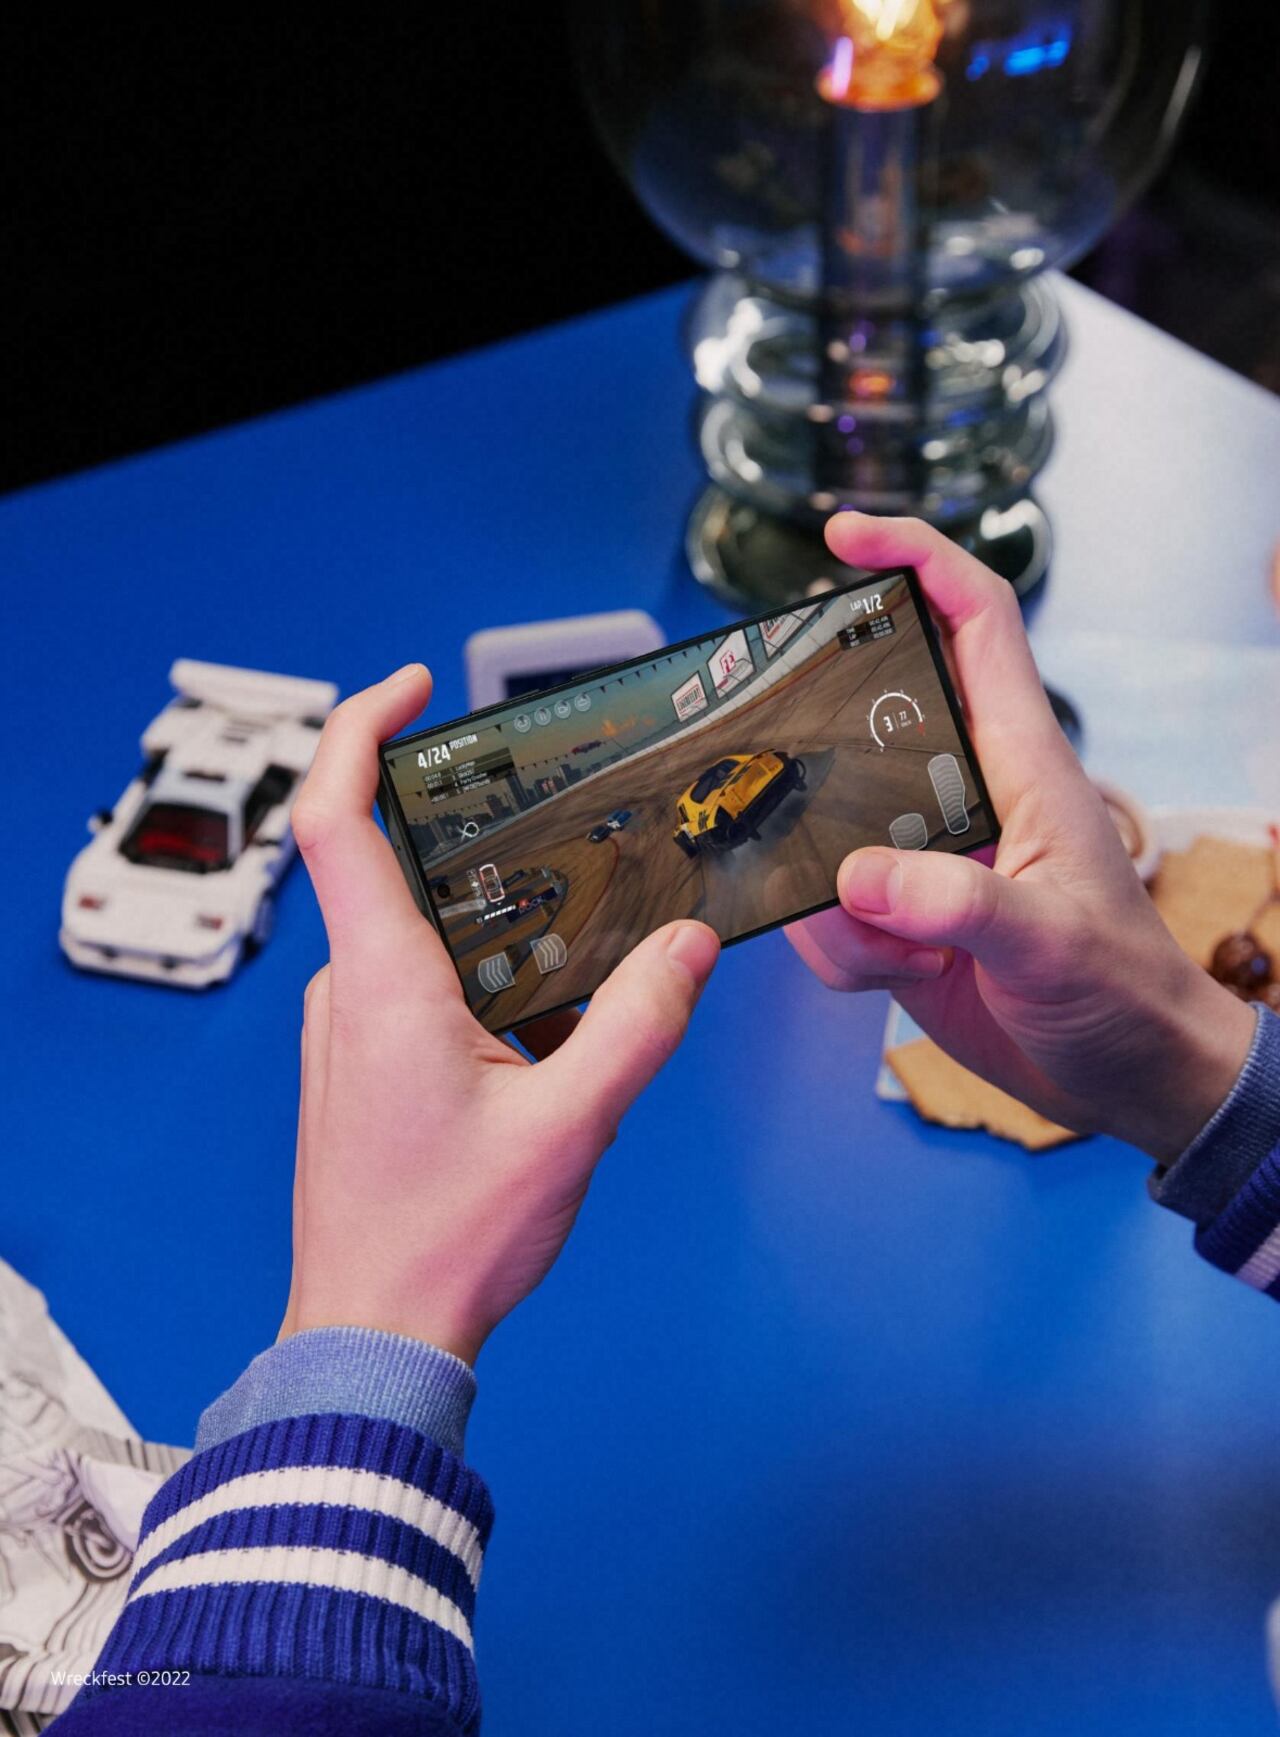 Samsung indicó que su línea Galaxy S23 cuenta con un potente procesador que mejora la experiencia en videojuegos.